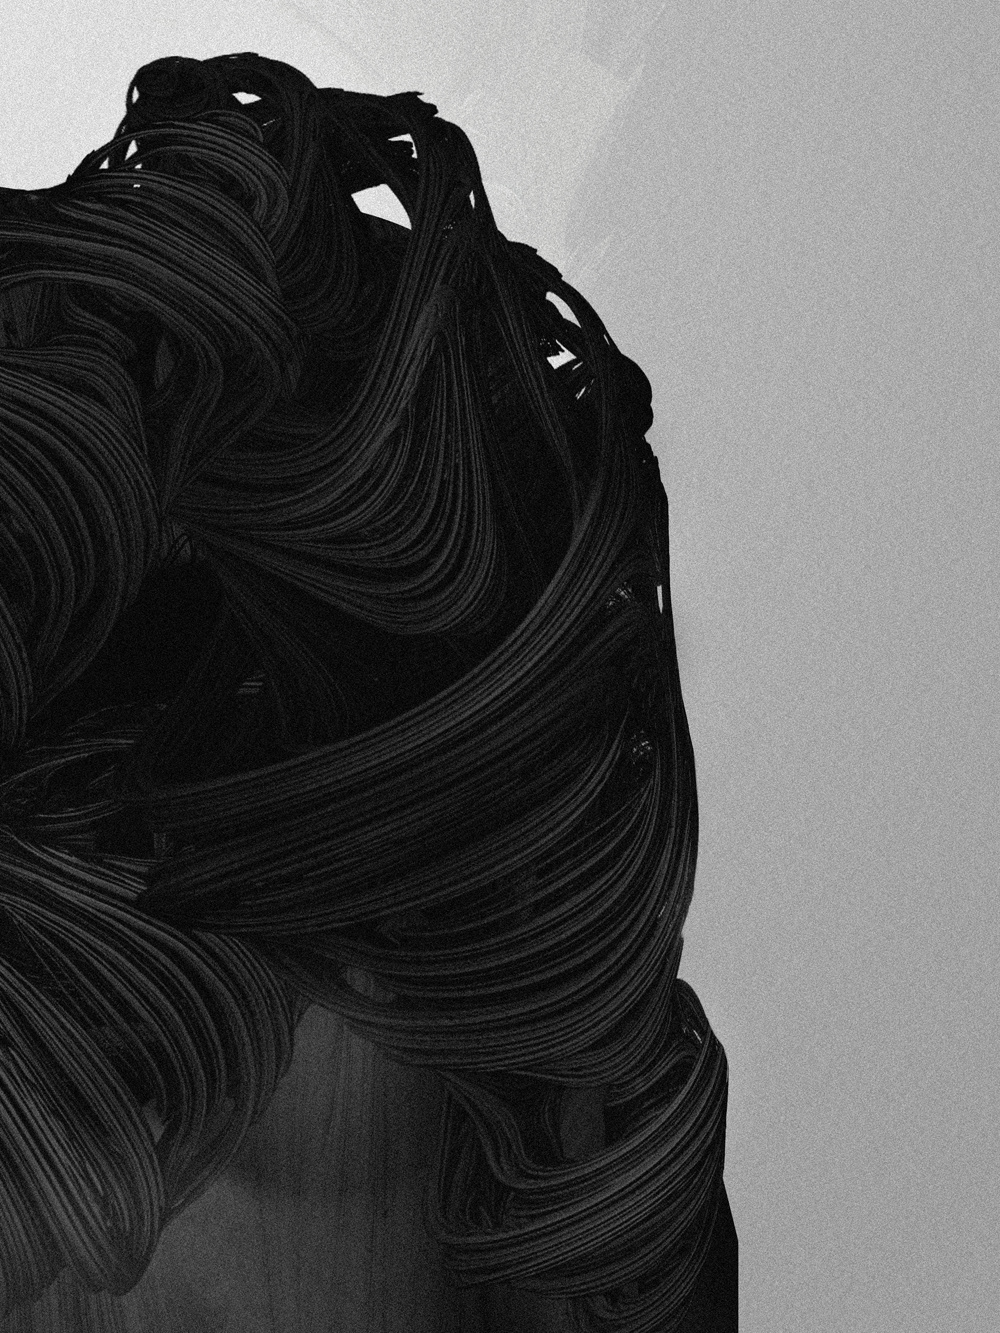 digital art nastplas drfranken dark gothic design woman